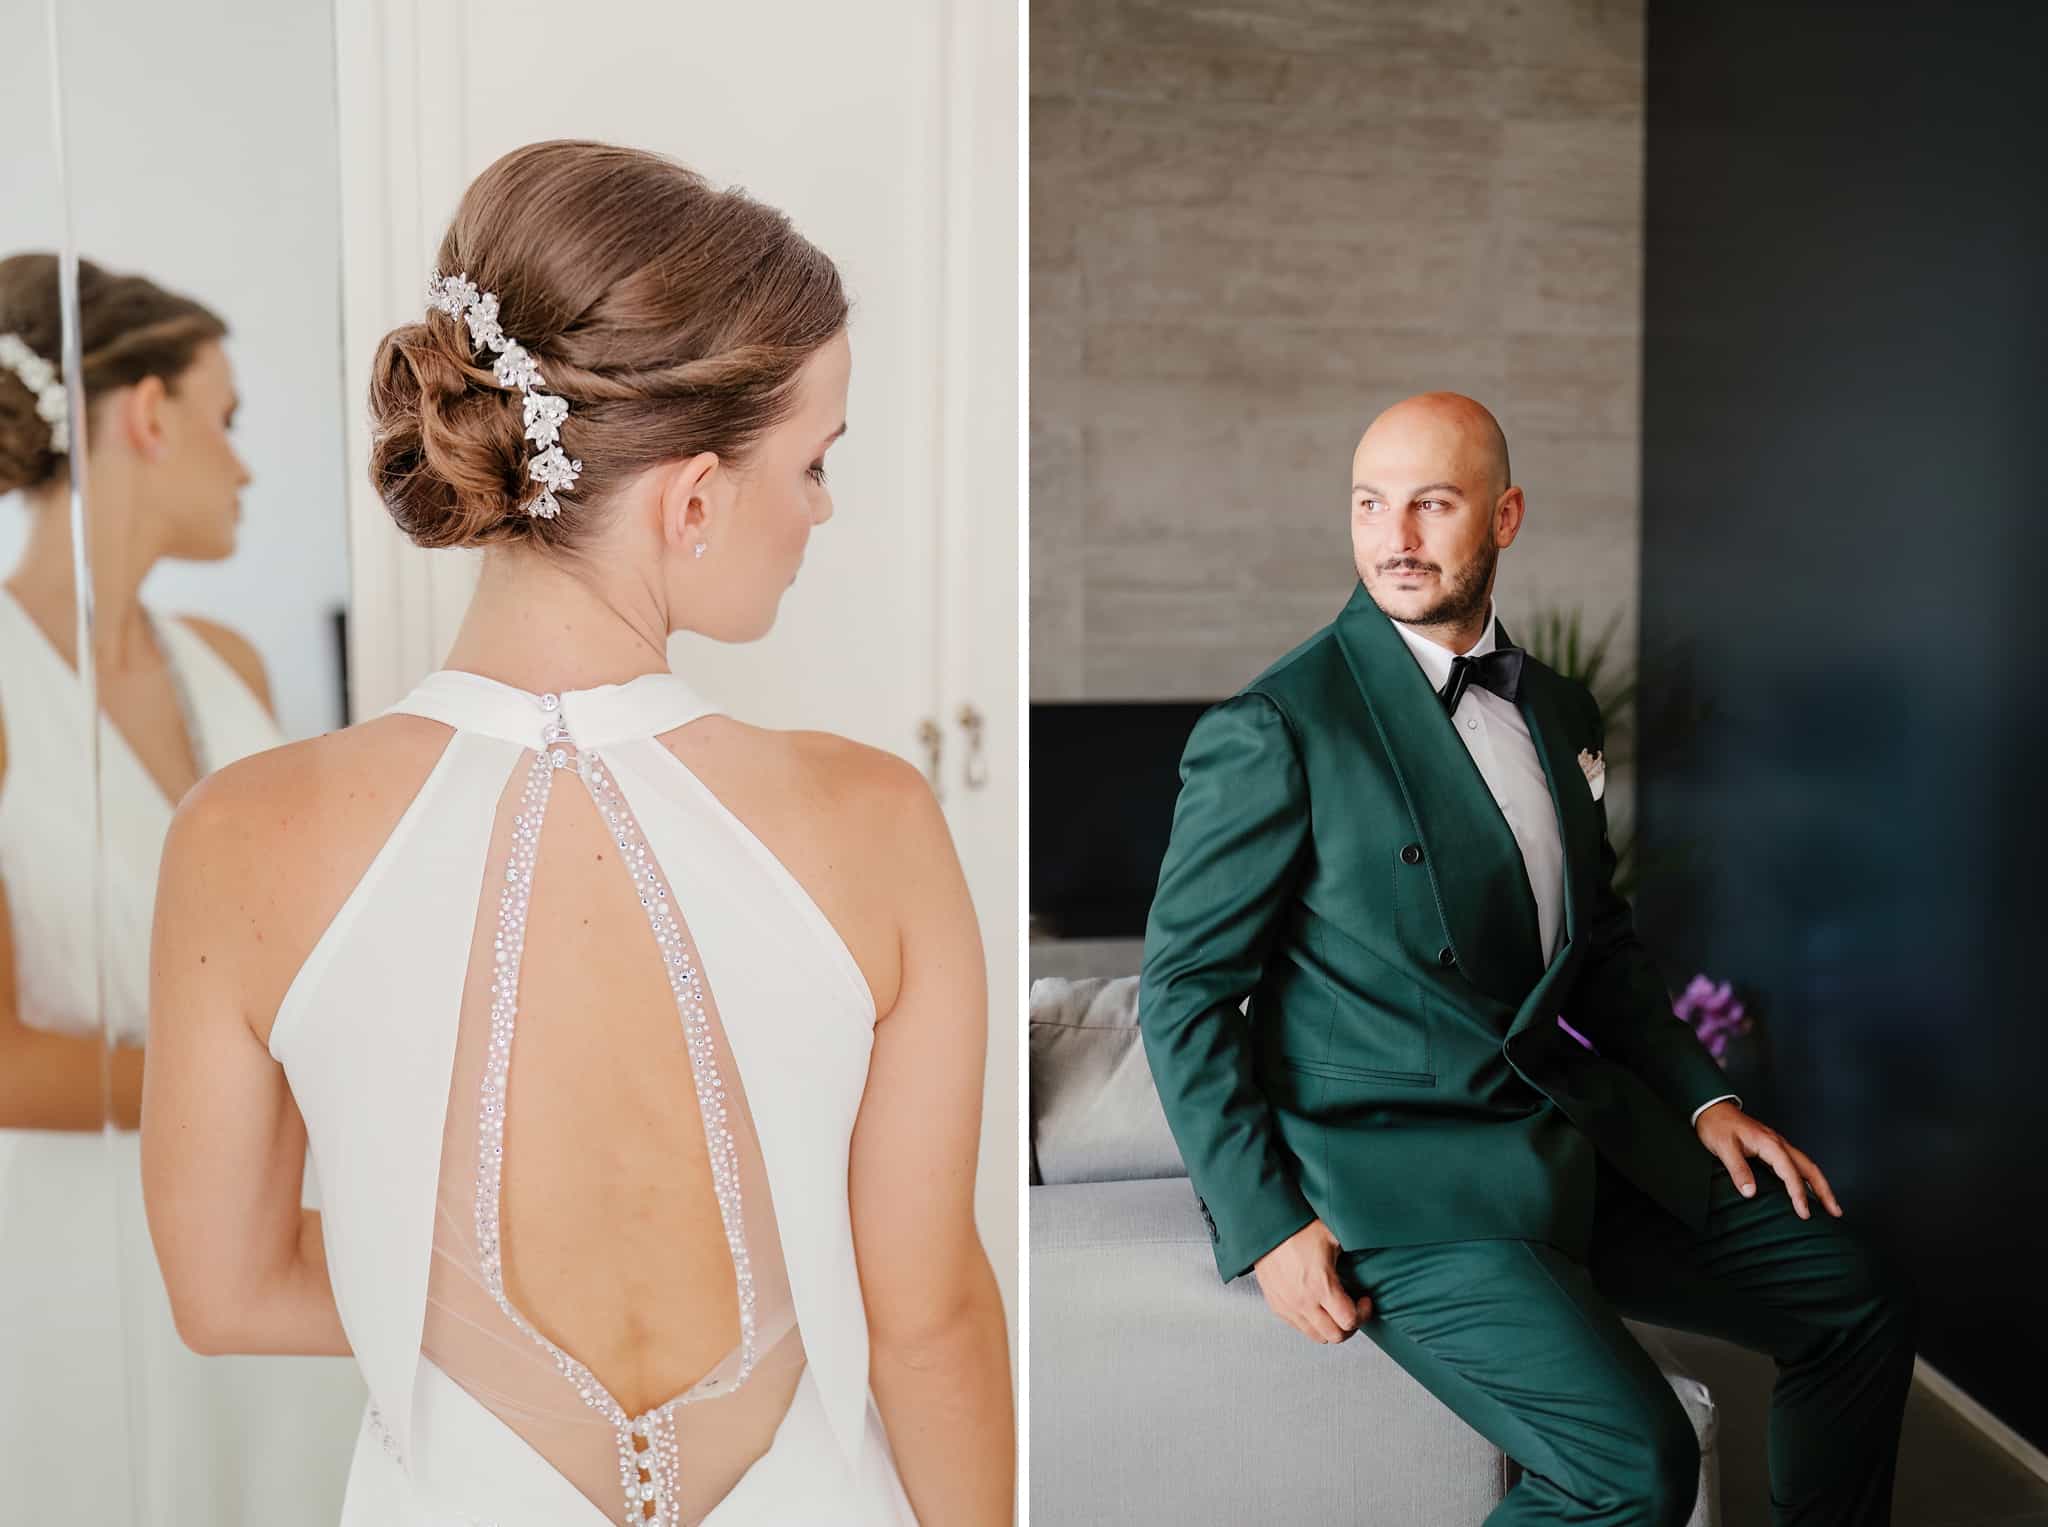 giacca-abito-sposo-sposa-acconciatura-capelli-raccolti-papillon-groom-suit-preparativi-fotografo-matrimonio-teramo